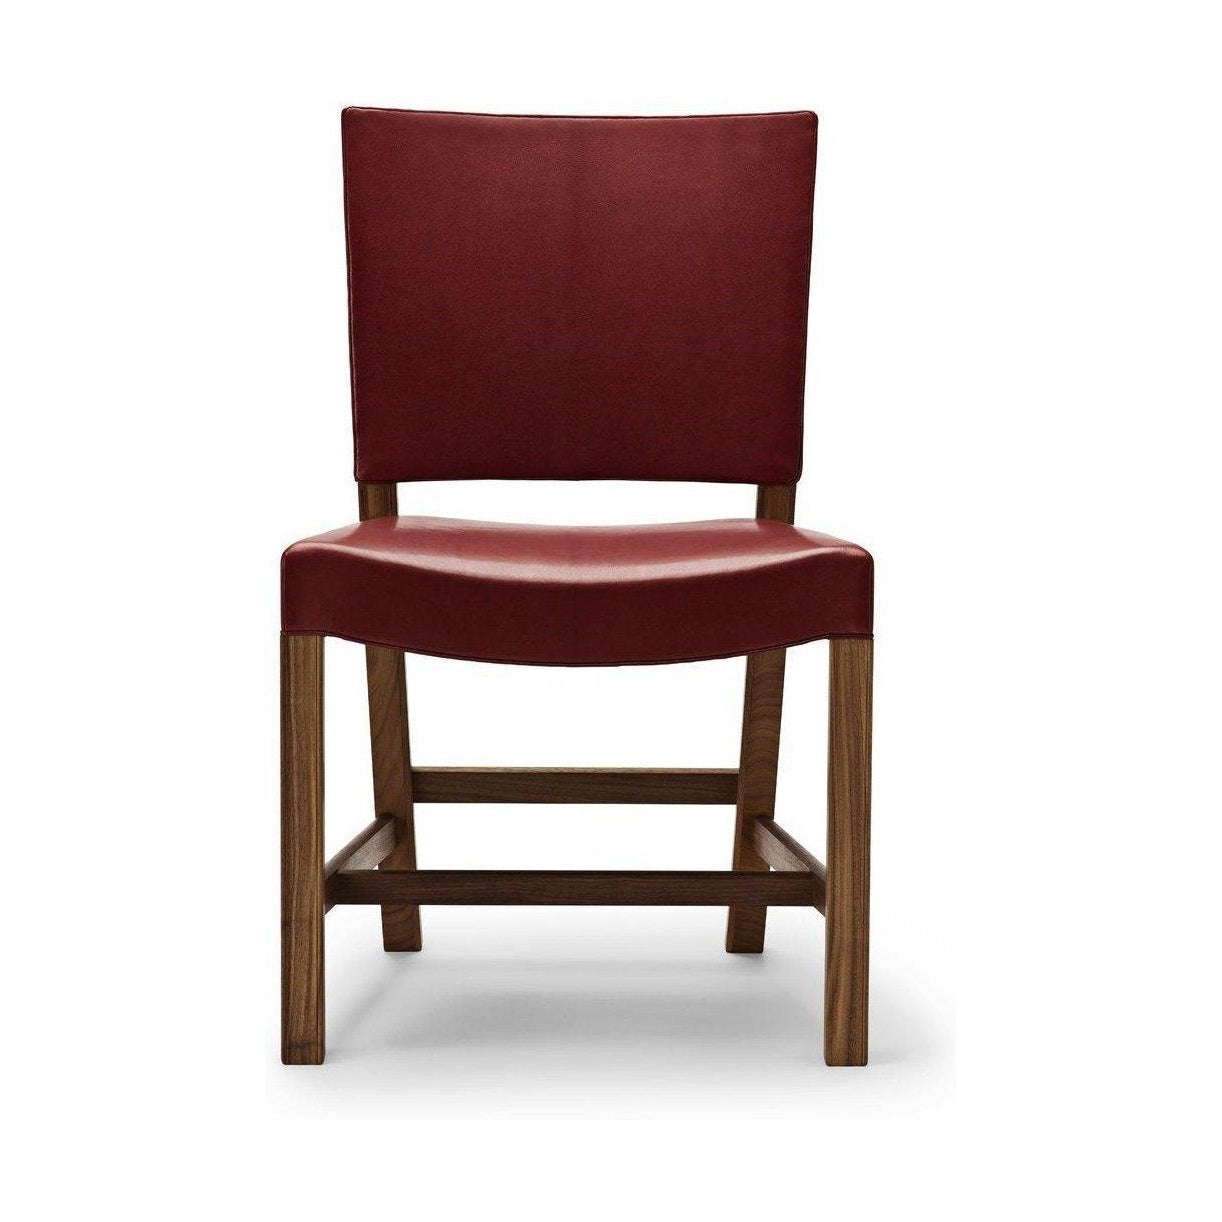 Carl Hansen KK47510 Der rote Stuhl, lackierte Walnuss/rote Ziegenleder